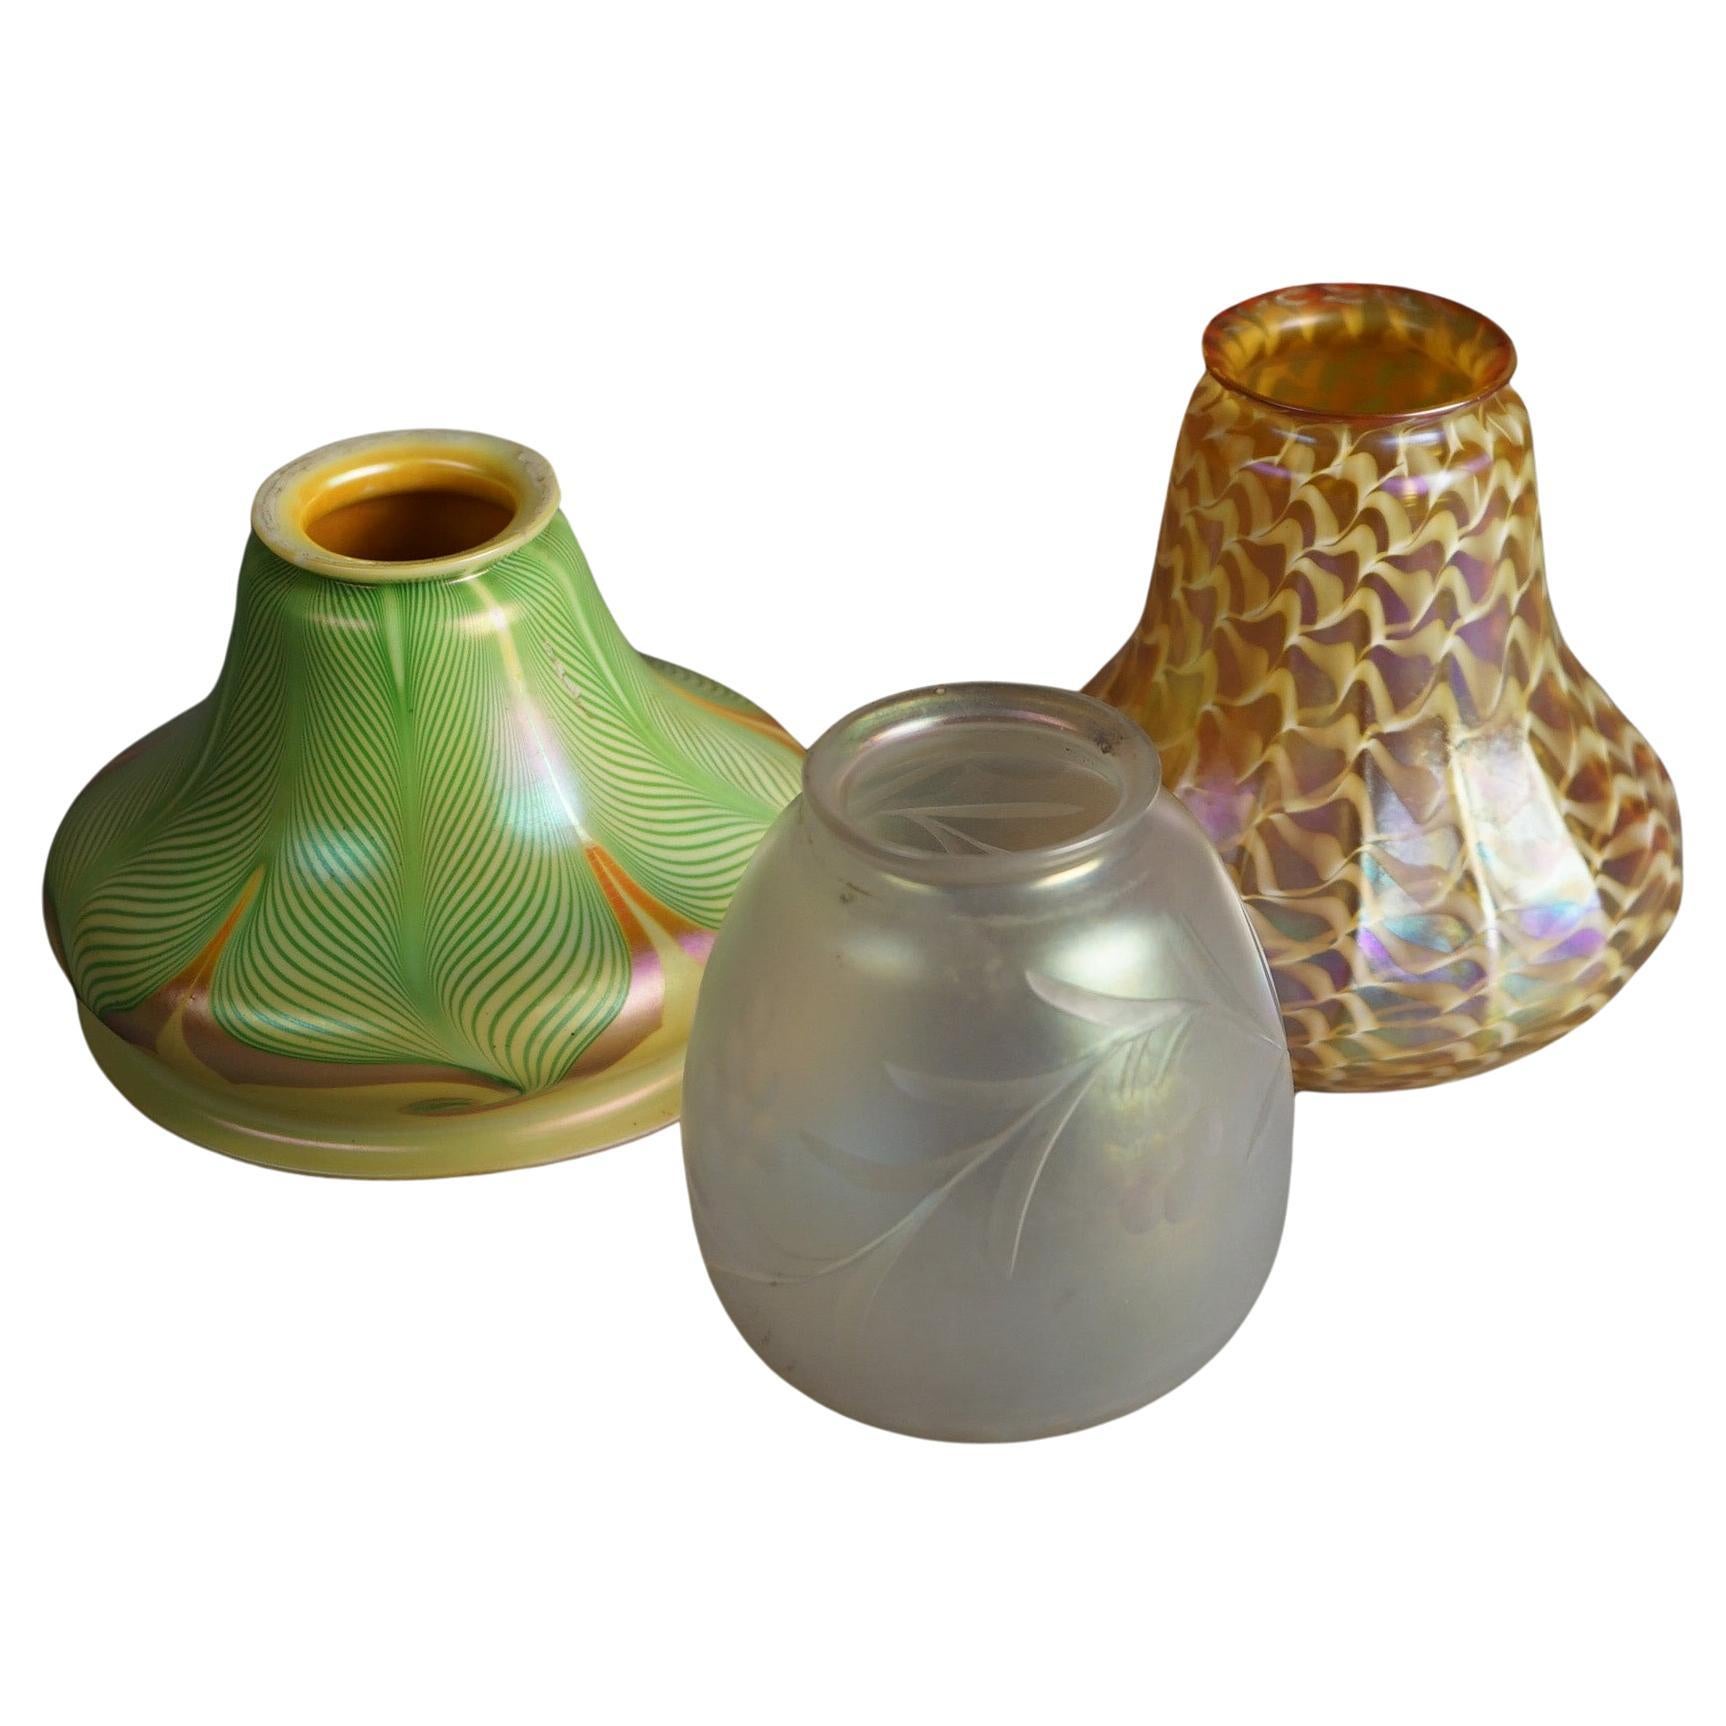 Three Arts & Crafts Steuben & Quezal Art Glass Shades C1920